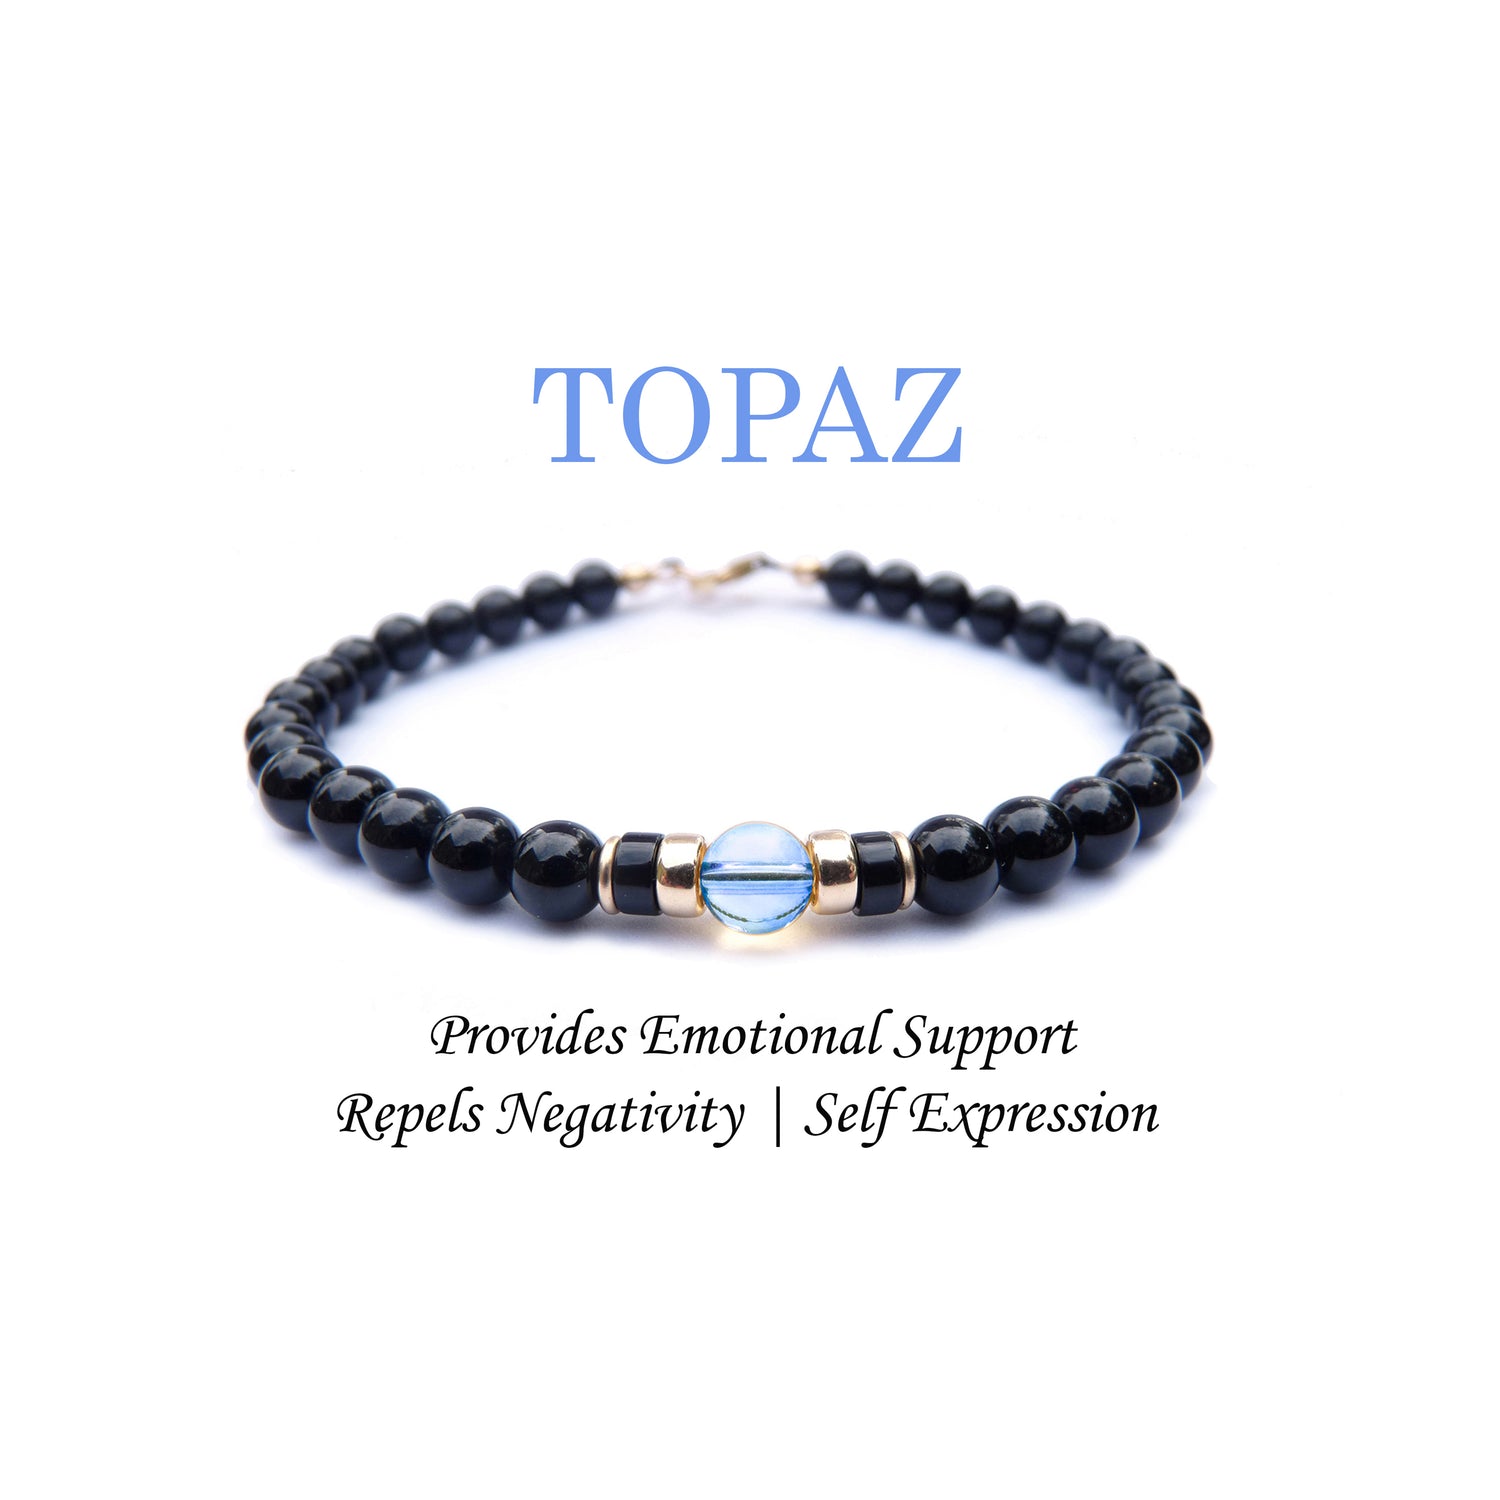 Topaz Mens Birthstone Bracelet, November Birthstone Jewelry, Scorpio Gemstone Beaded Black Onyx Birthday Gift